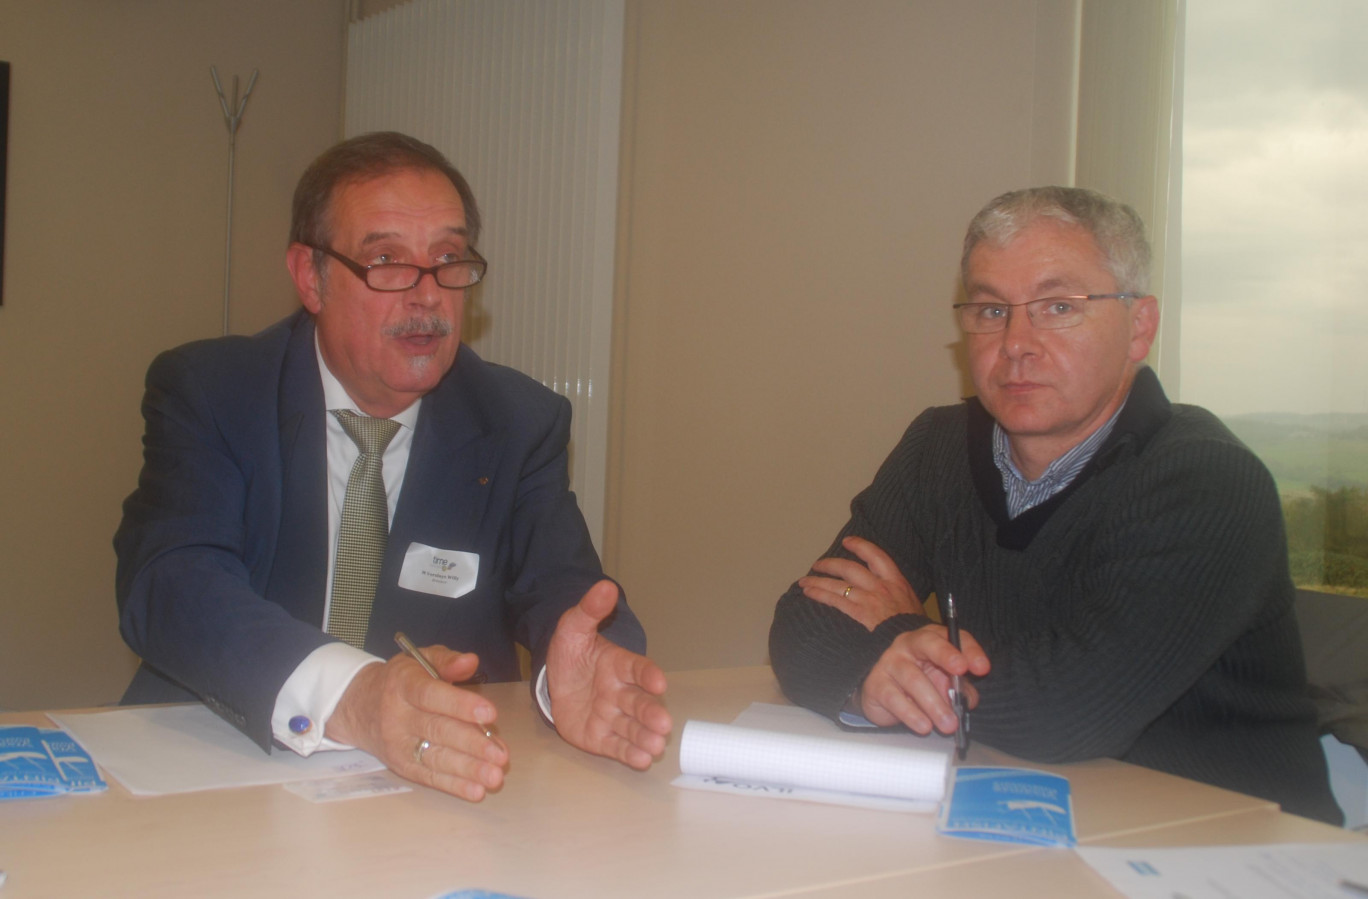 Programme de coopération transfrontalière, Time permet à des professionnels voisins d'engager des projets en commun, à l'image de Willy Versluys (armateur à Ostende) et de Jean-Michel Facqueur (coopérative maritime de Dunkerque) intéressés par "une moule des bancs de Flandre".